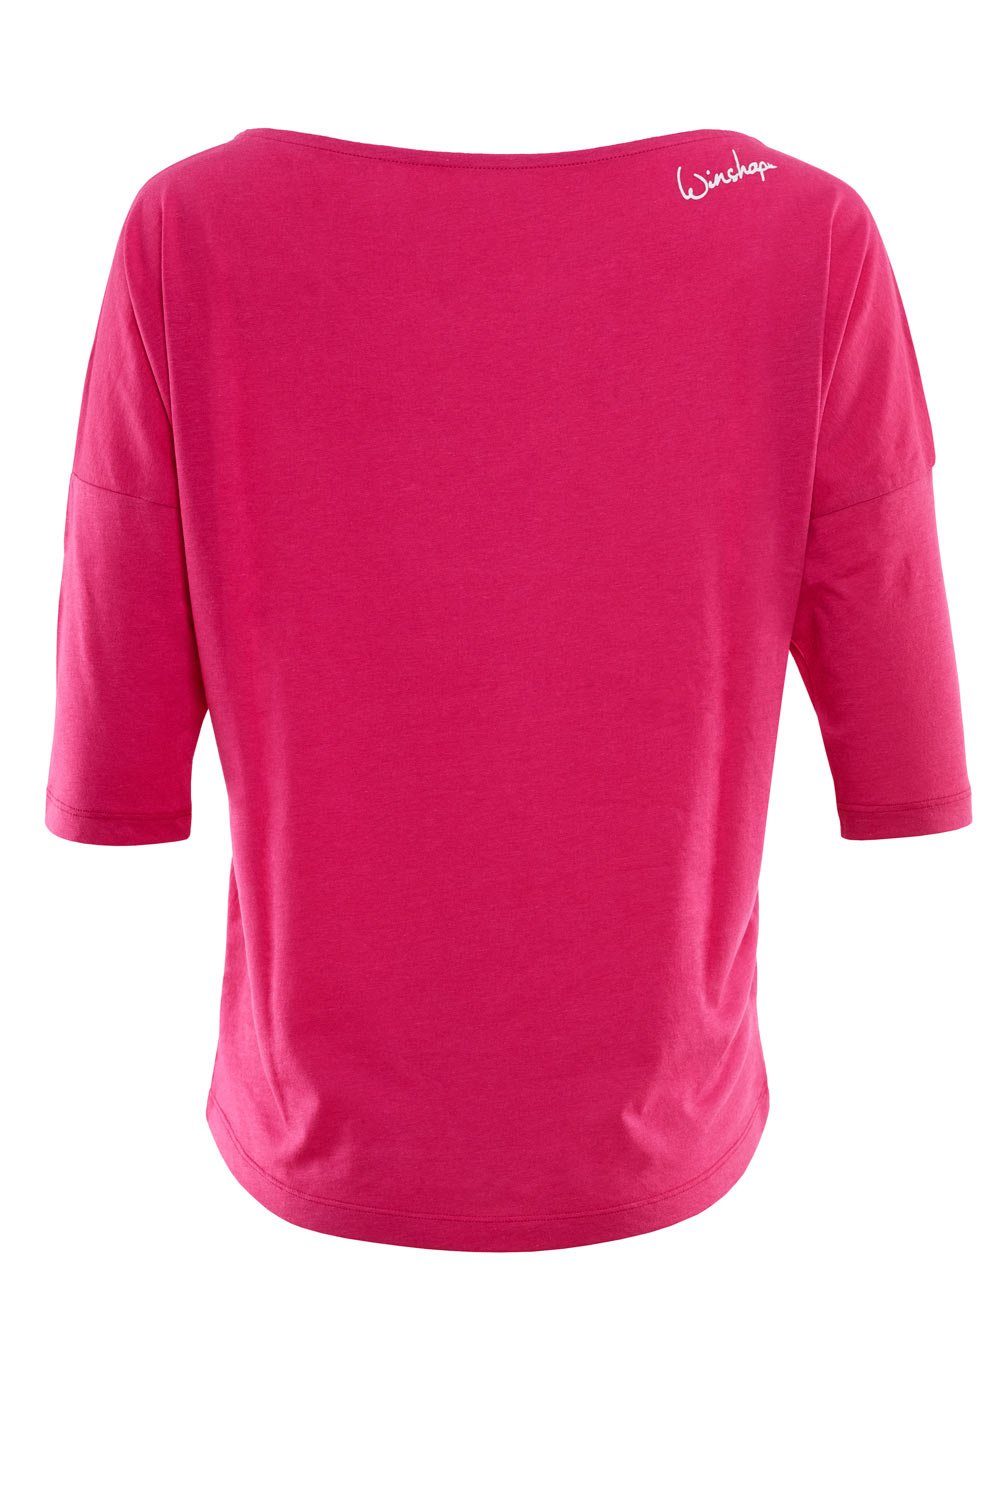 weißem Glitzer-Aufdruck glitzer 3/4-Arm-Shirt weiß deep ultra - pink Winshape MCS001 leicht mit